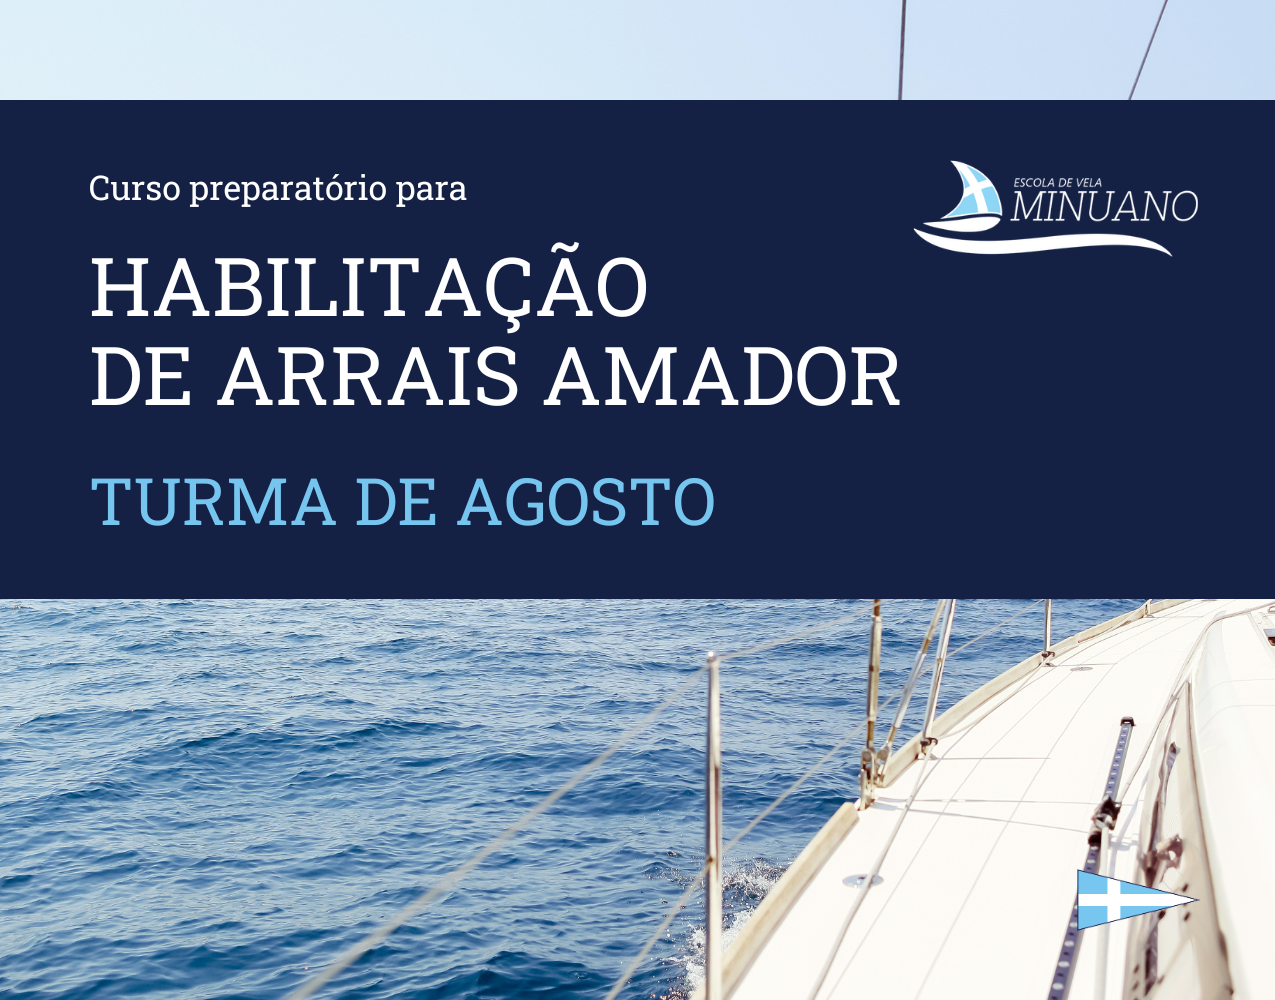 Curso preparatório para habilitação de Arrais Amador - Turma de Agosto. Inscreva-se! 